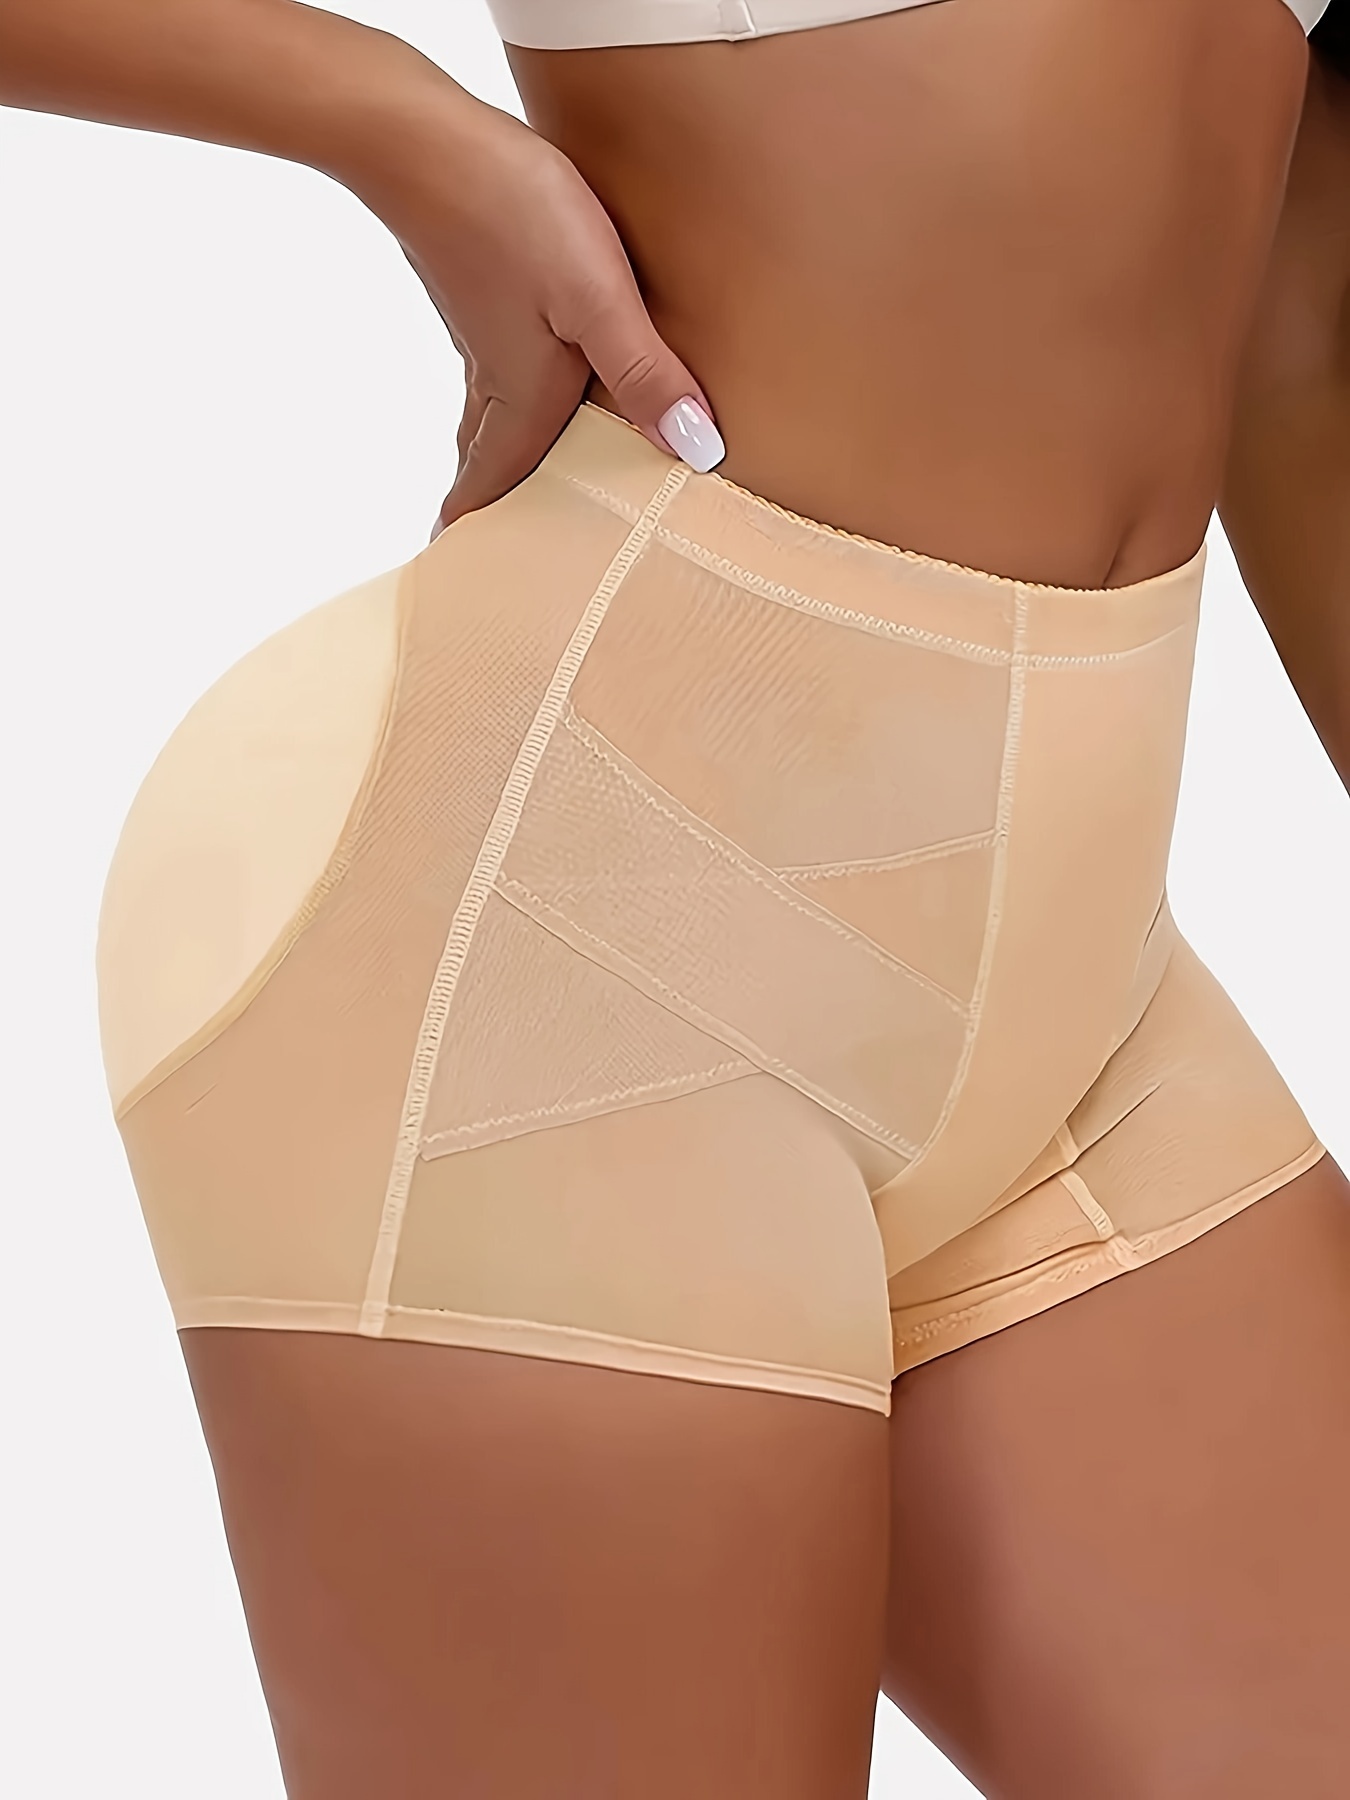 Women's Mesh Padded Fake Butt Shaper Butt Lifter Boyshort Panties